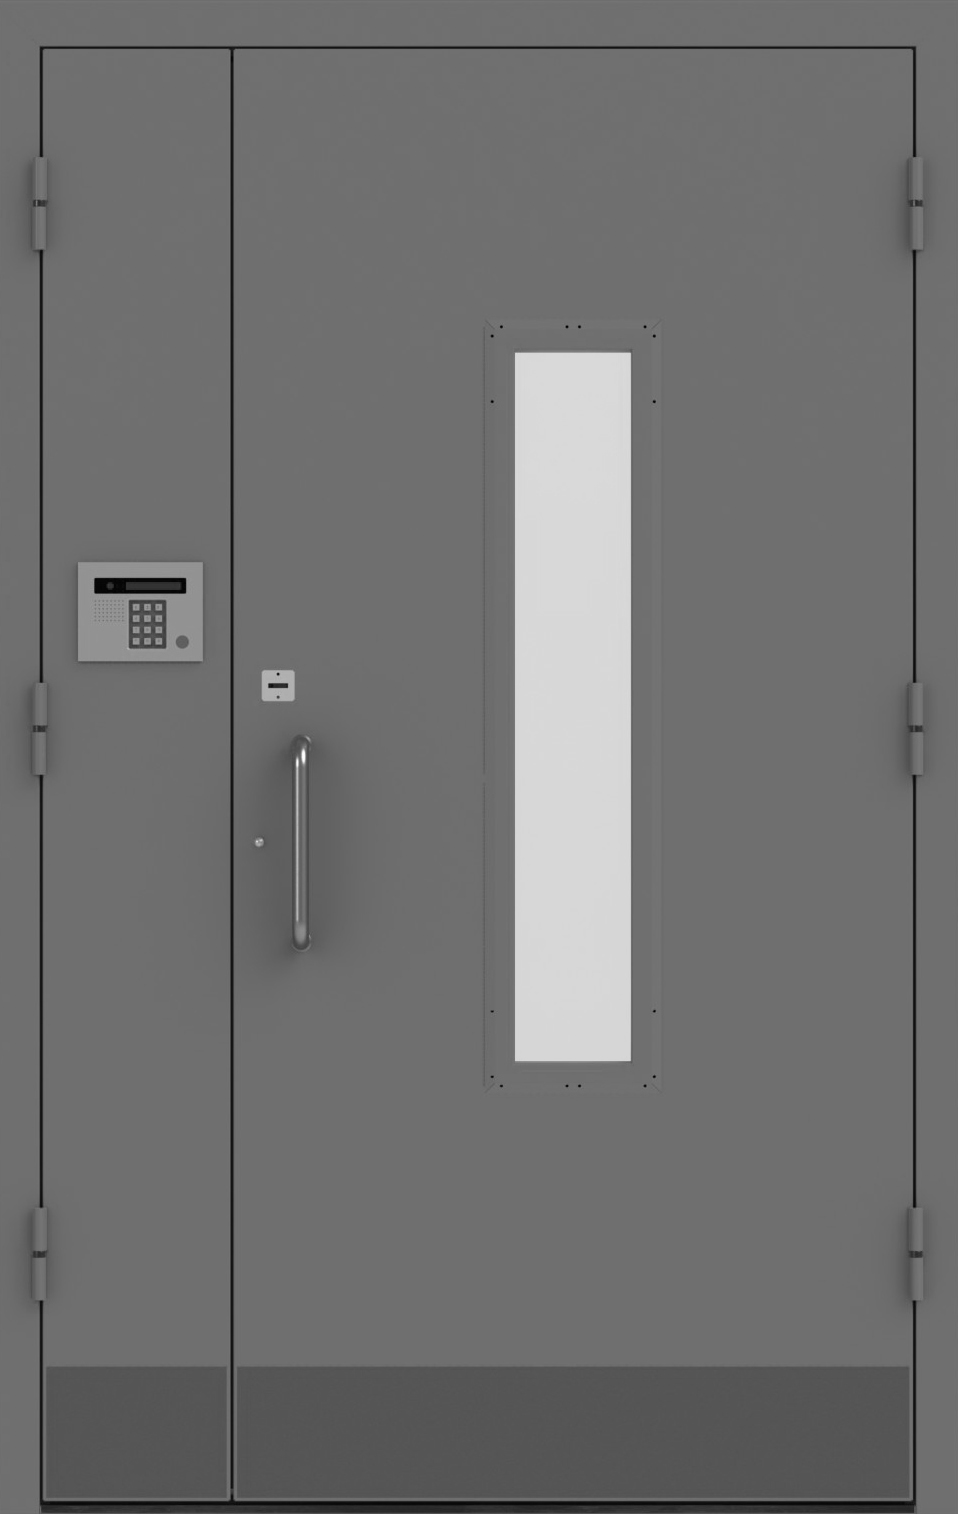 Дверь входной группы, двупольная со стеклом и домофоном ДМ 2.1-1.3 Д-СТ